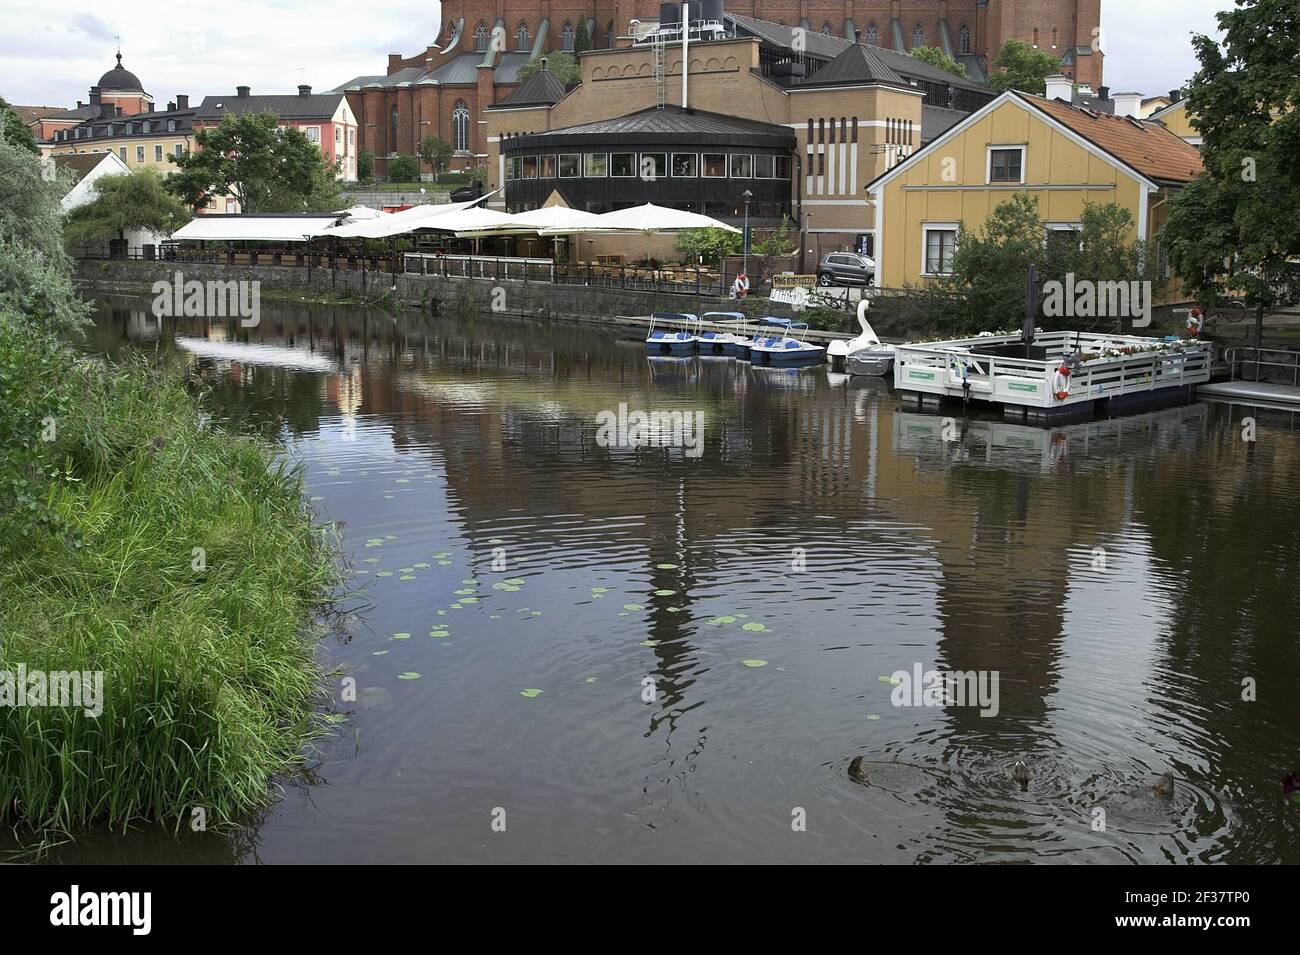 Uppsala, Sweden, Schweden; Empty restaurant gardens by the River Fyris. Leere Restaurantgärten am Fluss Fyris. Puste ogródki restauracyjne; 空的餐廳花園。 Stock Photo